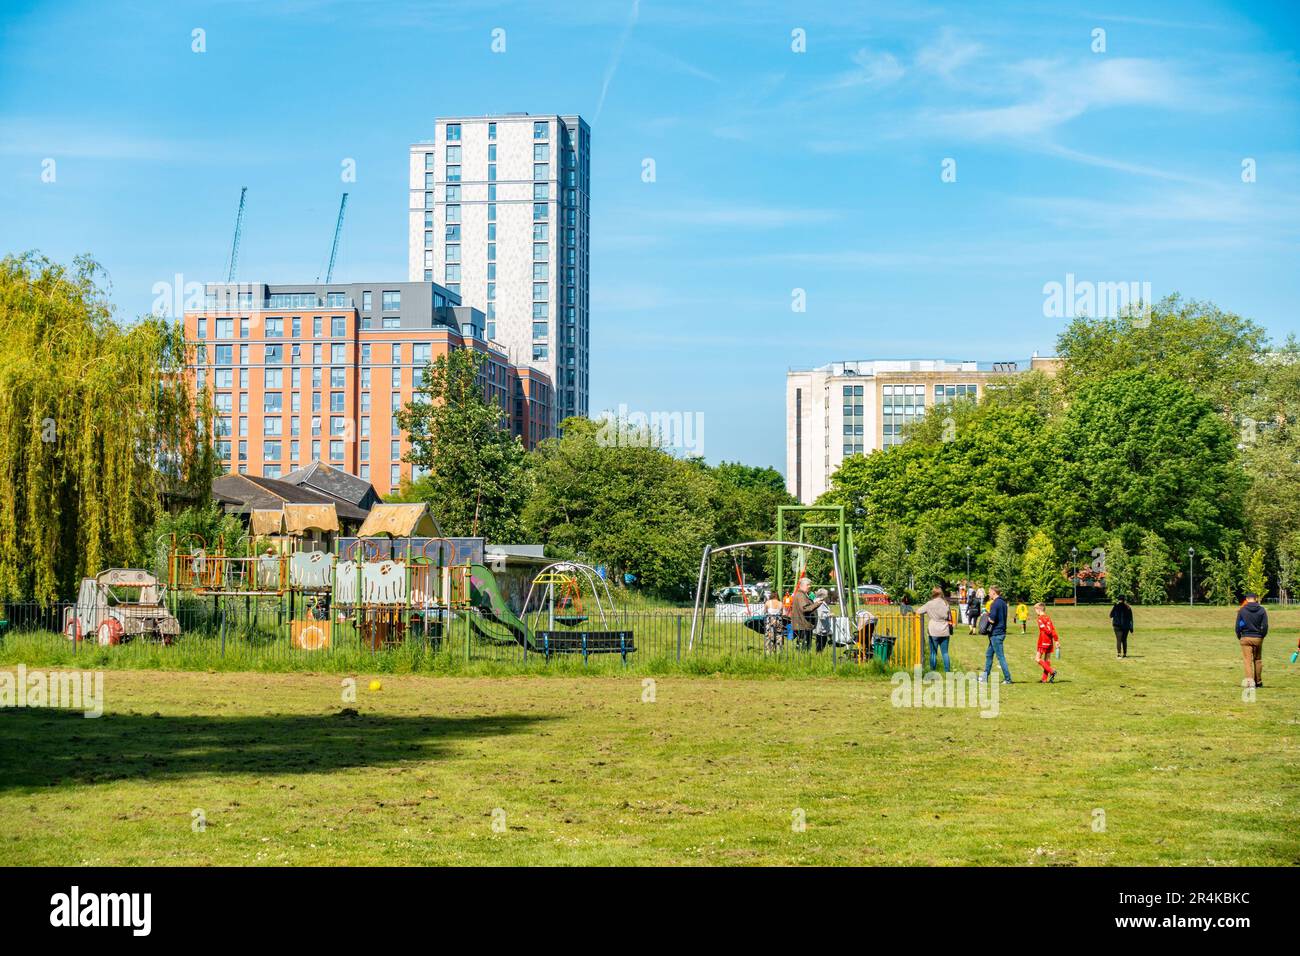 Una vista de Kings Meadow Park en Reading, Berkshire, Reino Unido con modernos bloques de torres en la distancia y un patio de juegos para niños en primer plano. Foto de stock